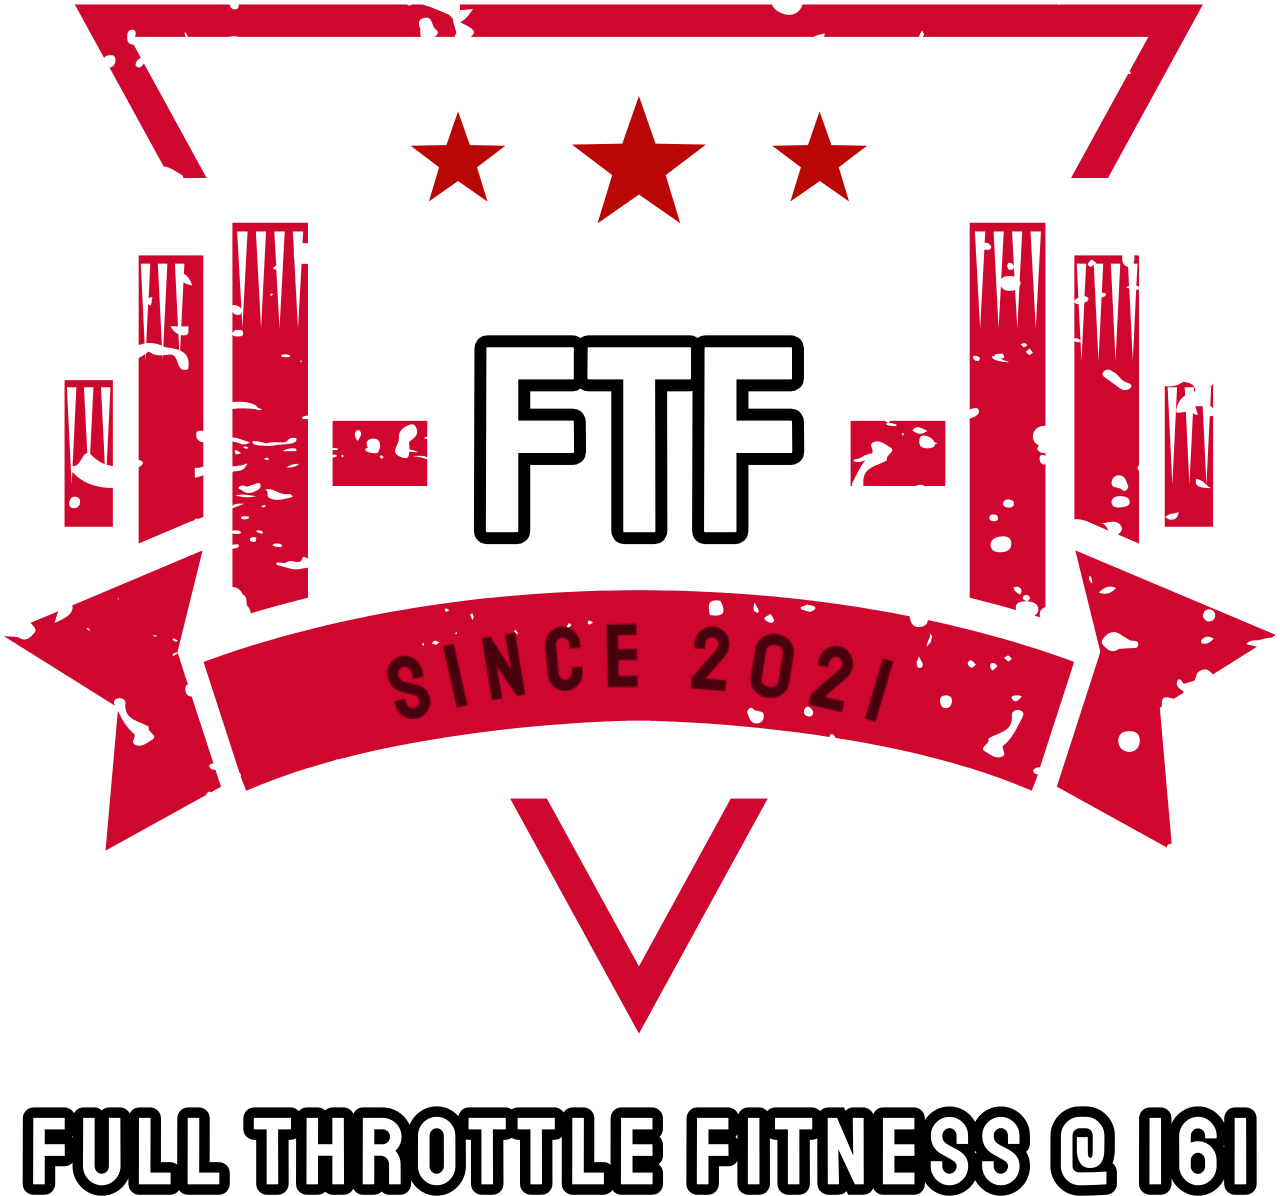 FULL THROTTLE FITNESS @ 161's logo